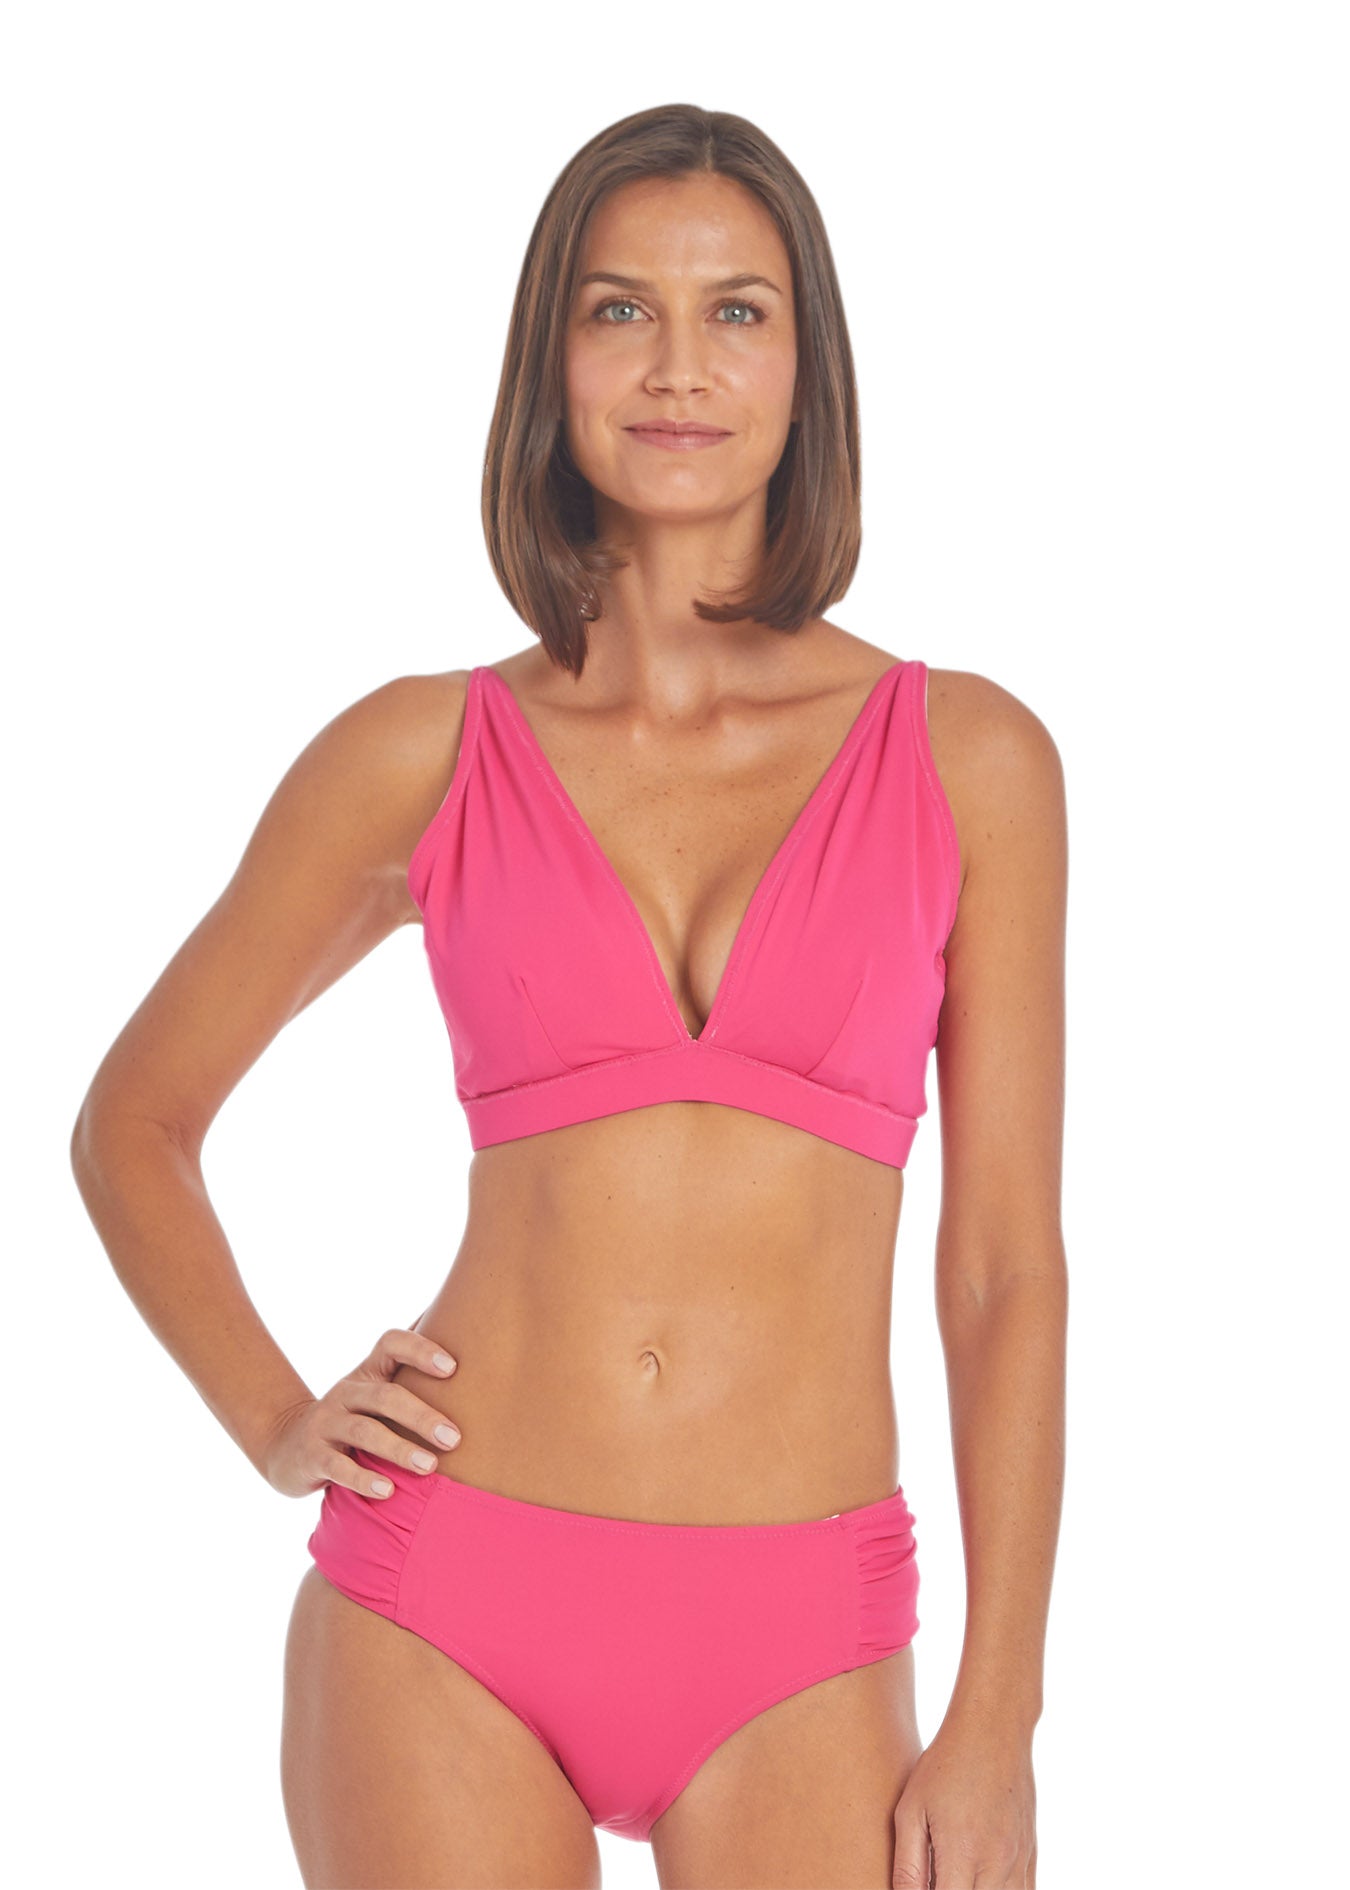 Woman wearing Tulum Reversible Triangle Bikini Top pink side and Tulum Reversible Bikini Bottom pink side